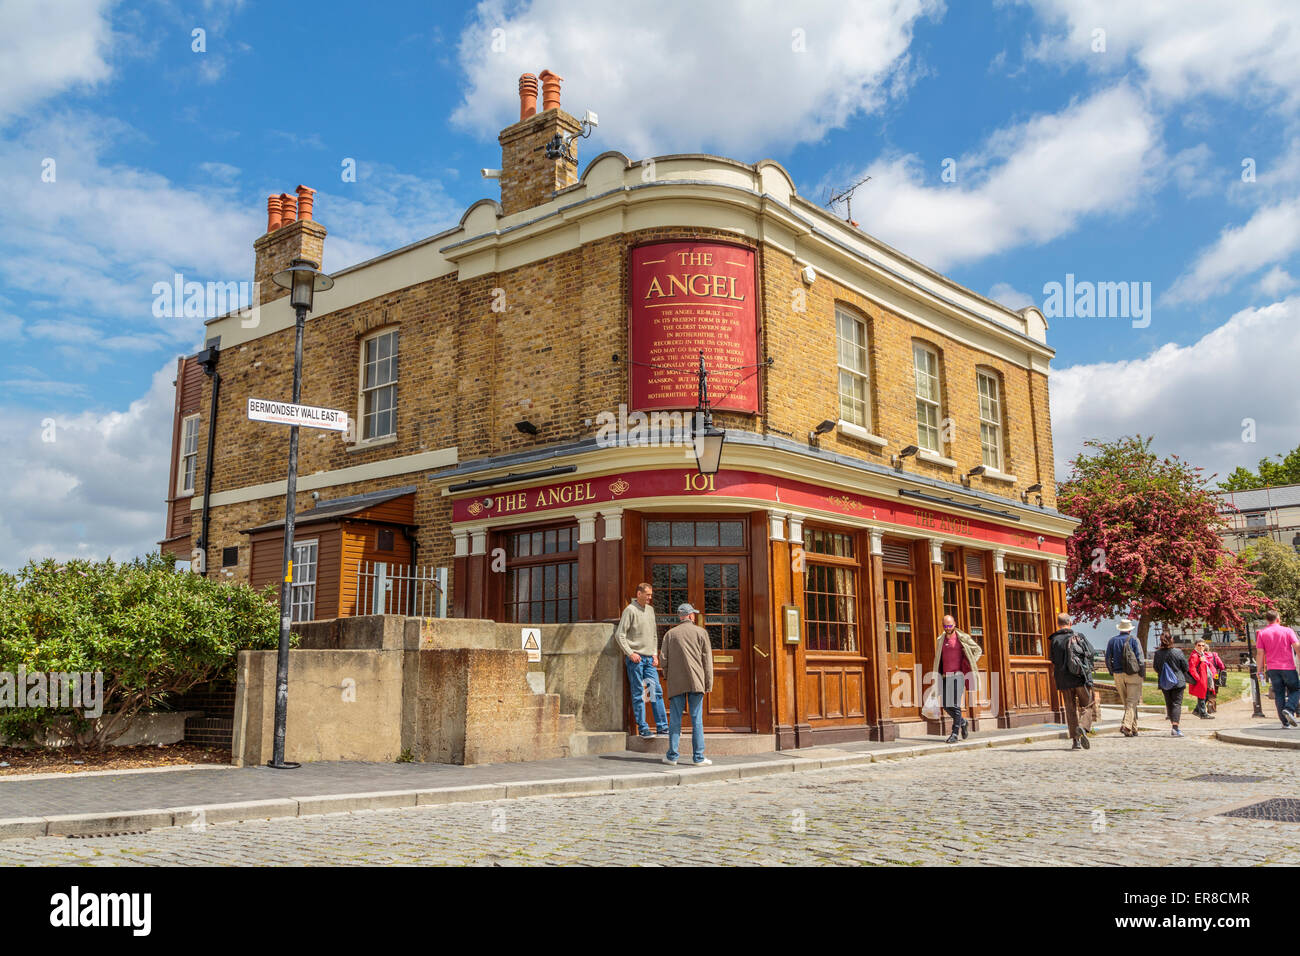 Der Angel Pub außerhalb der Fassade Bermondsey Wall an einem sommerlichen blauen Himmelstag, East London England UK Stockfoto